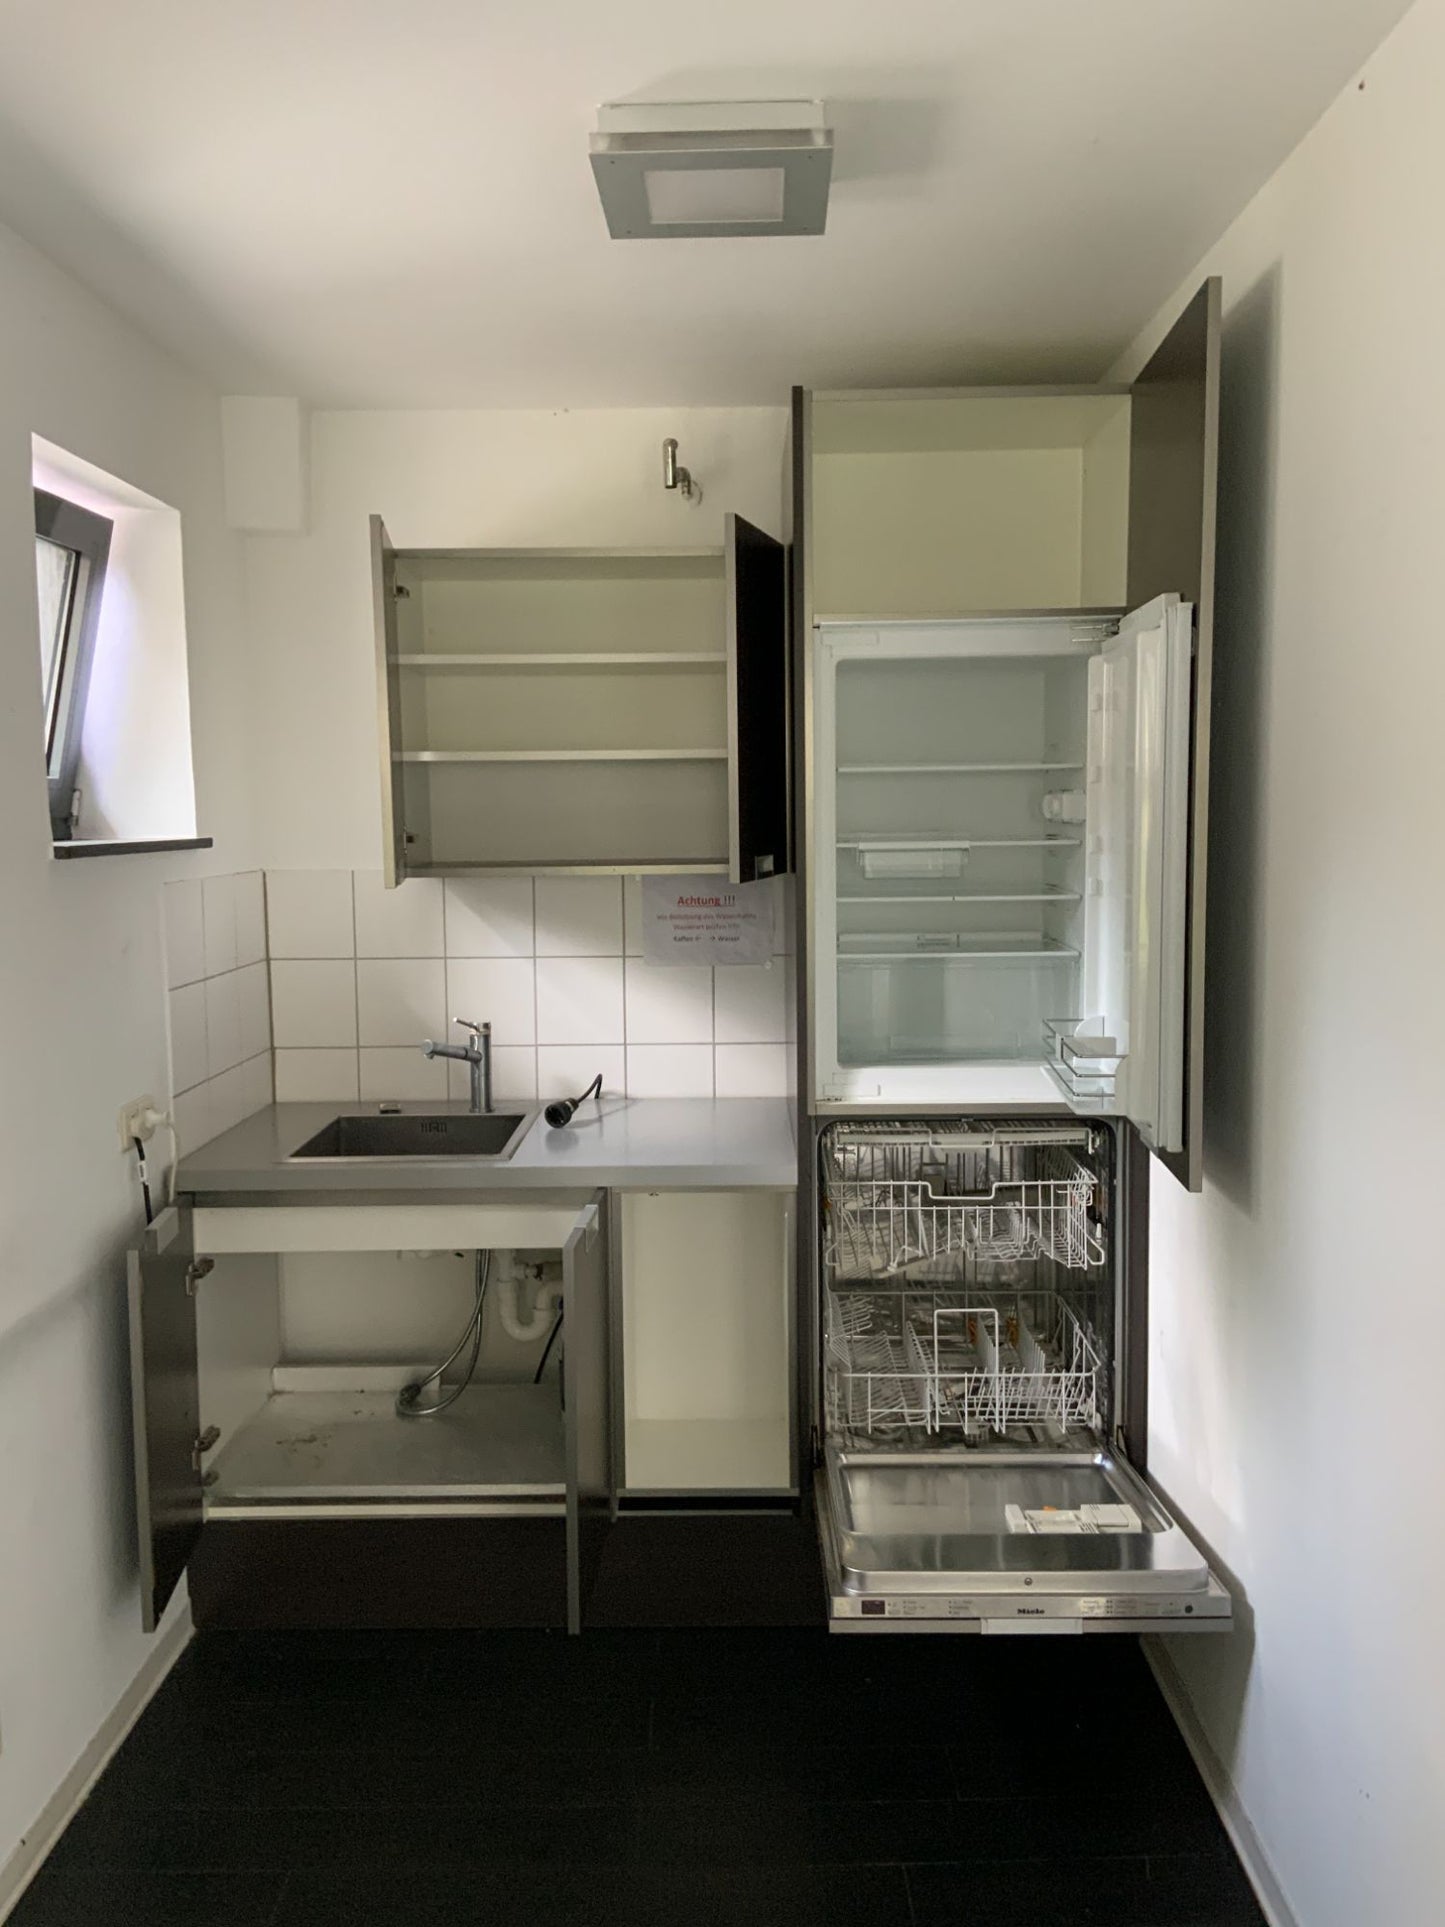 Einzeilige Einbauküche, Braunschwarz inkl. Kühlschrank, Geschirrspülmaschine MIELE 1830x2300x680